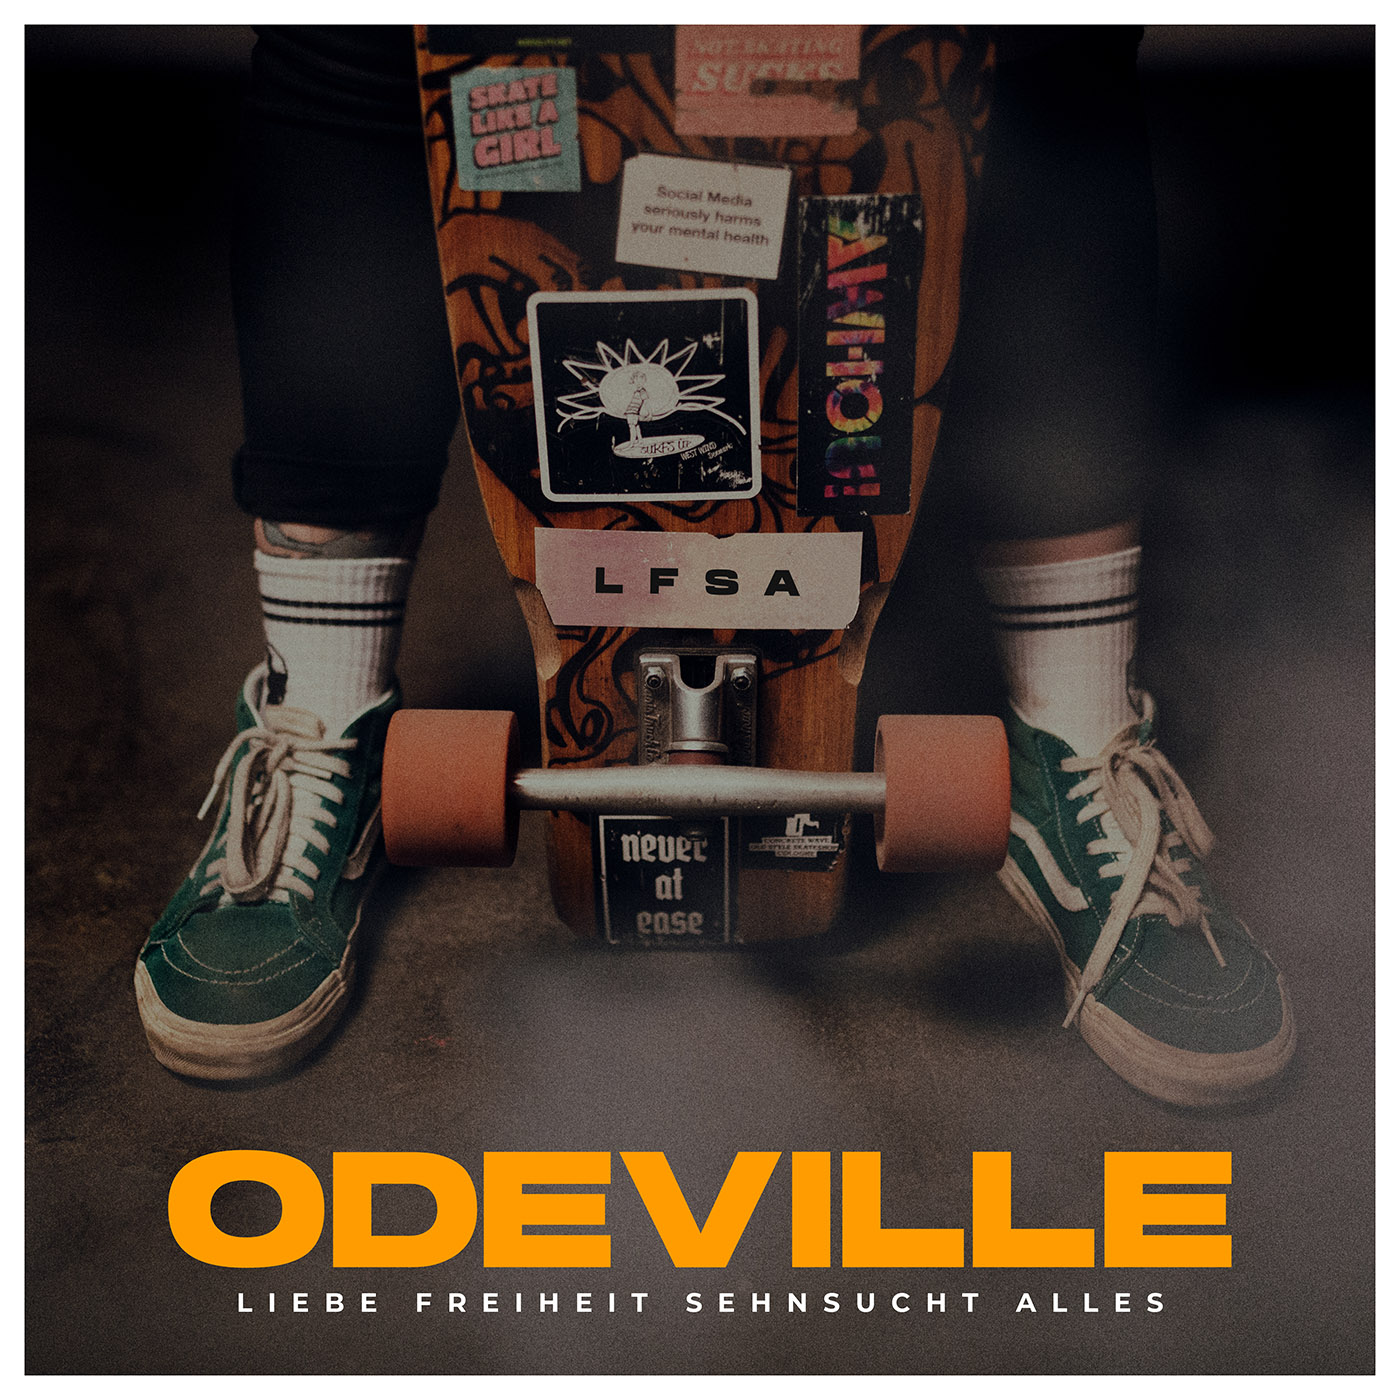 Odeville - ”Liebe Freiheit Sehnsucht Alles”